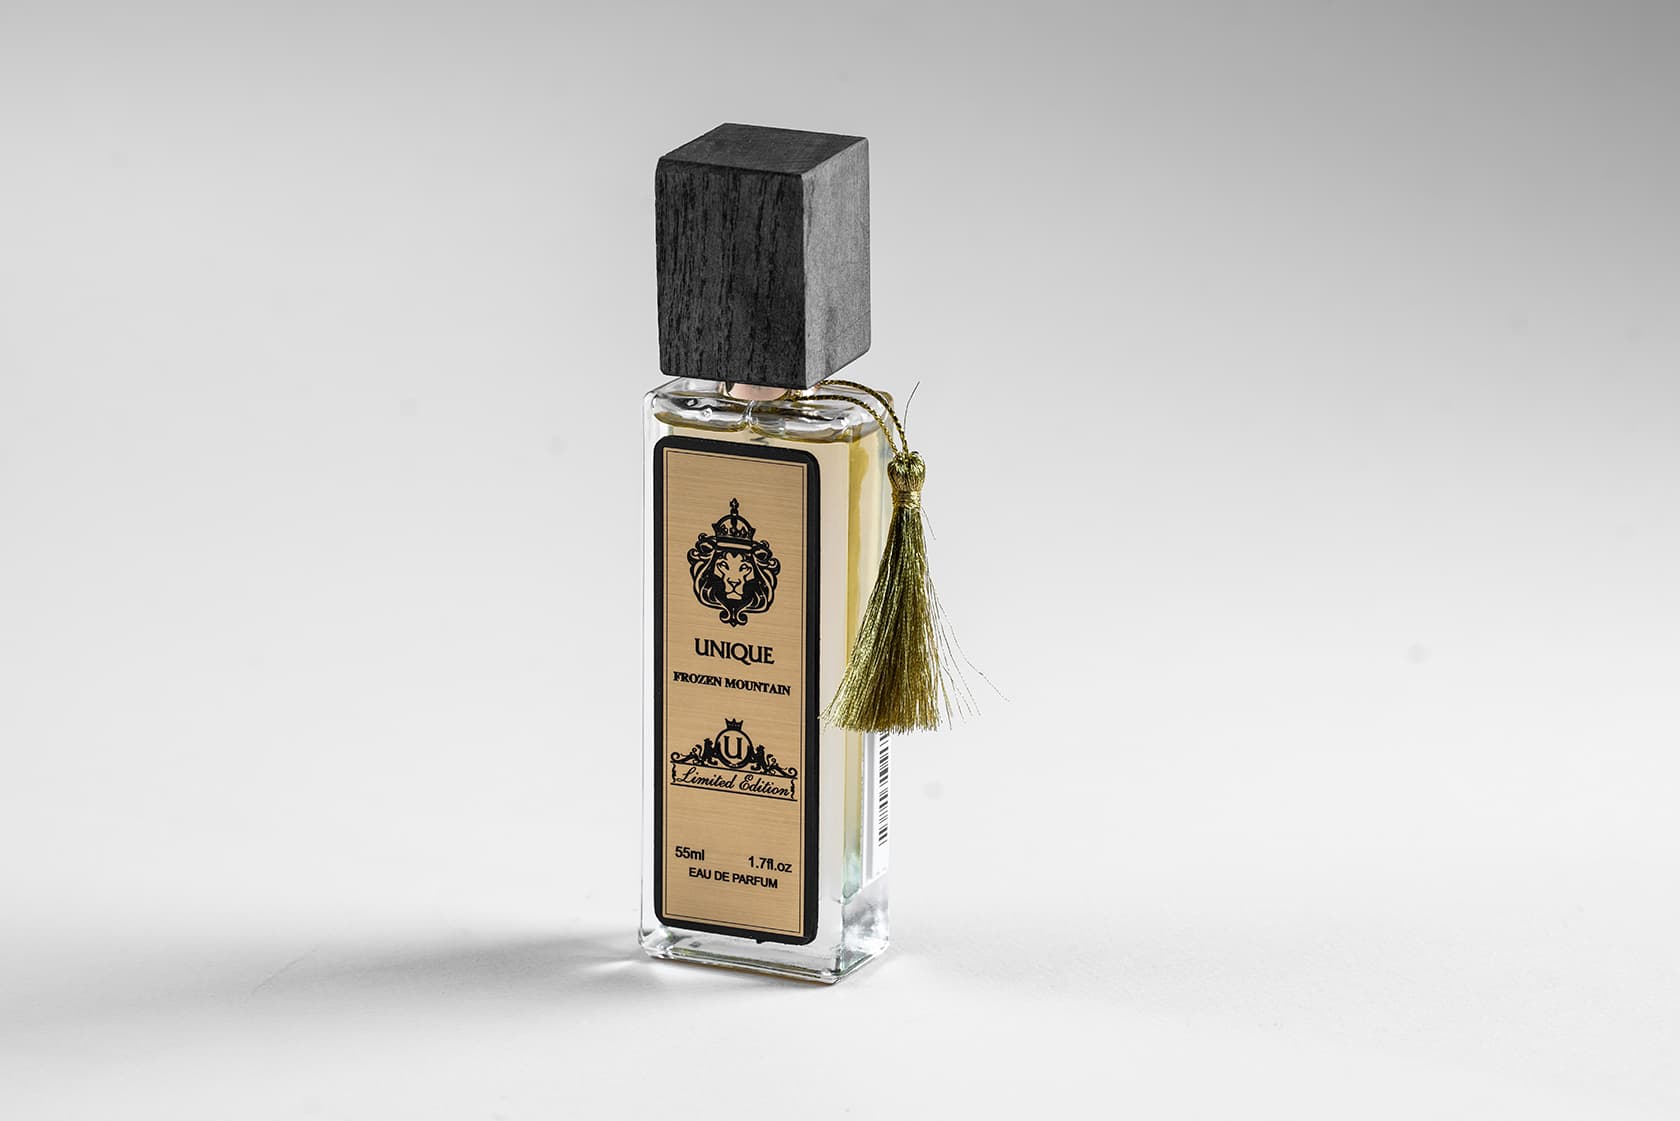 Unique parfum